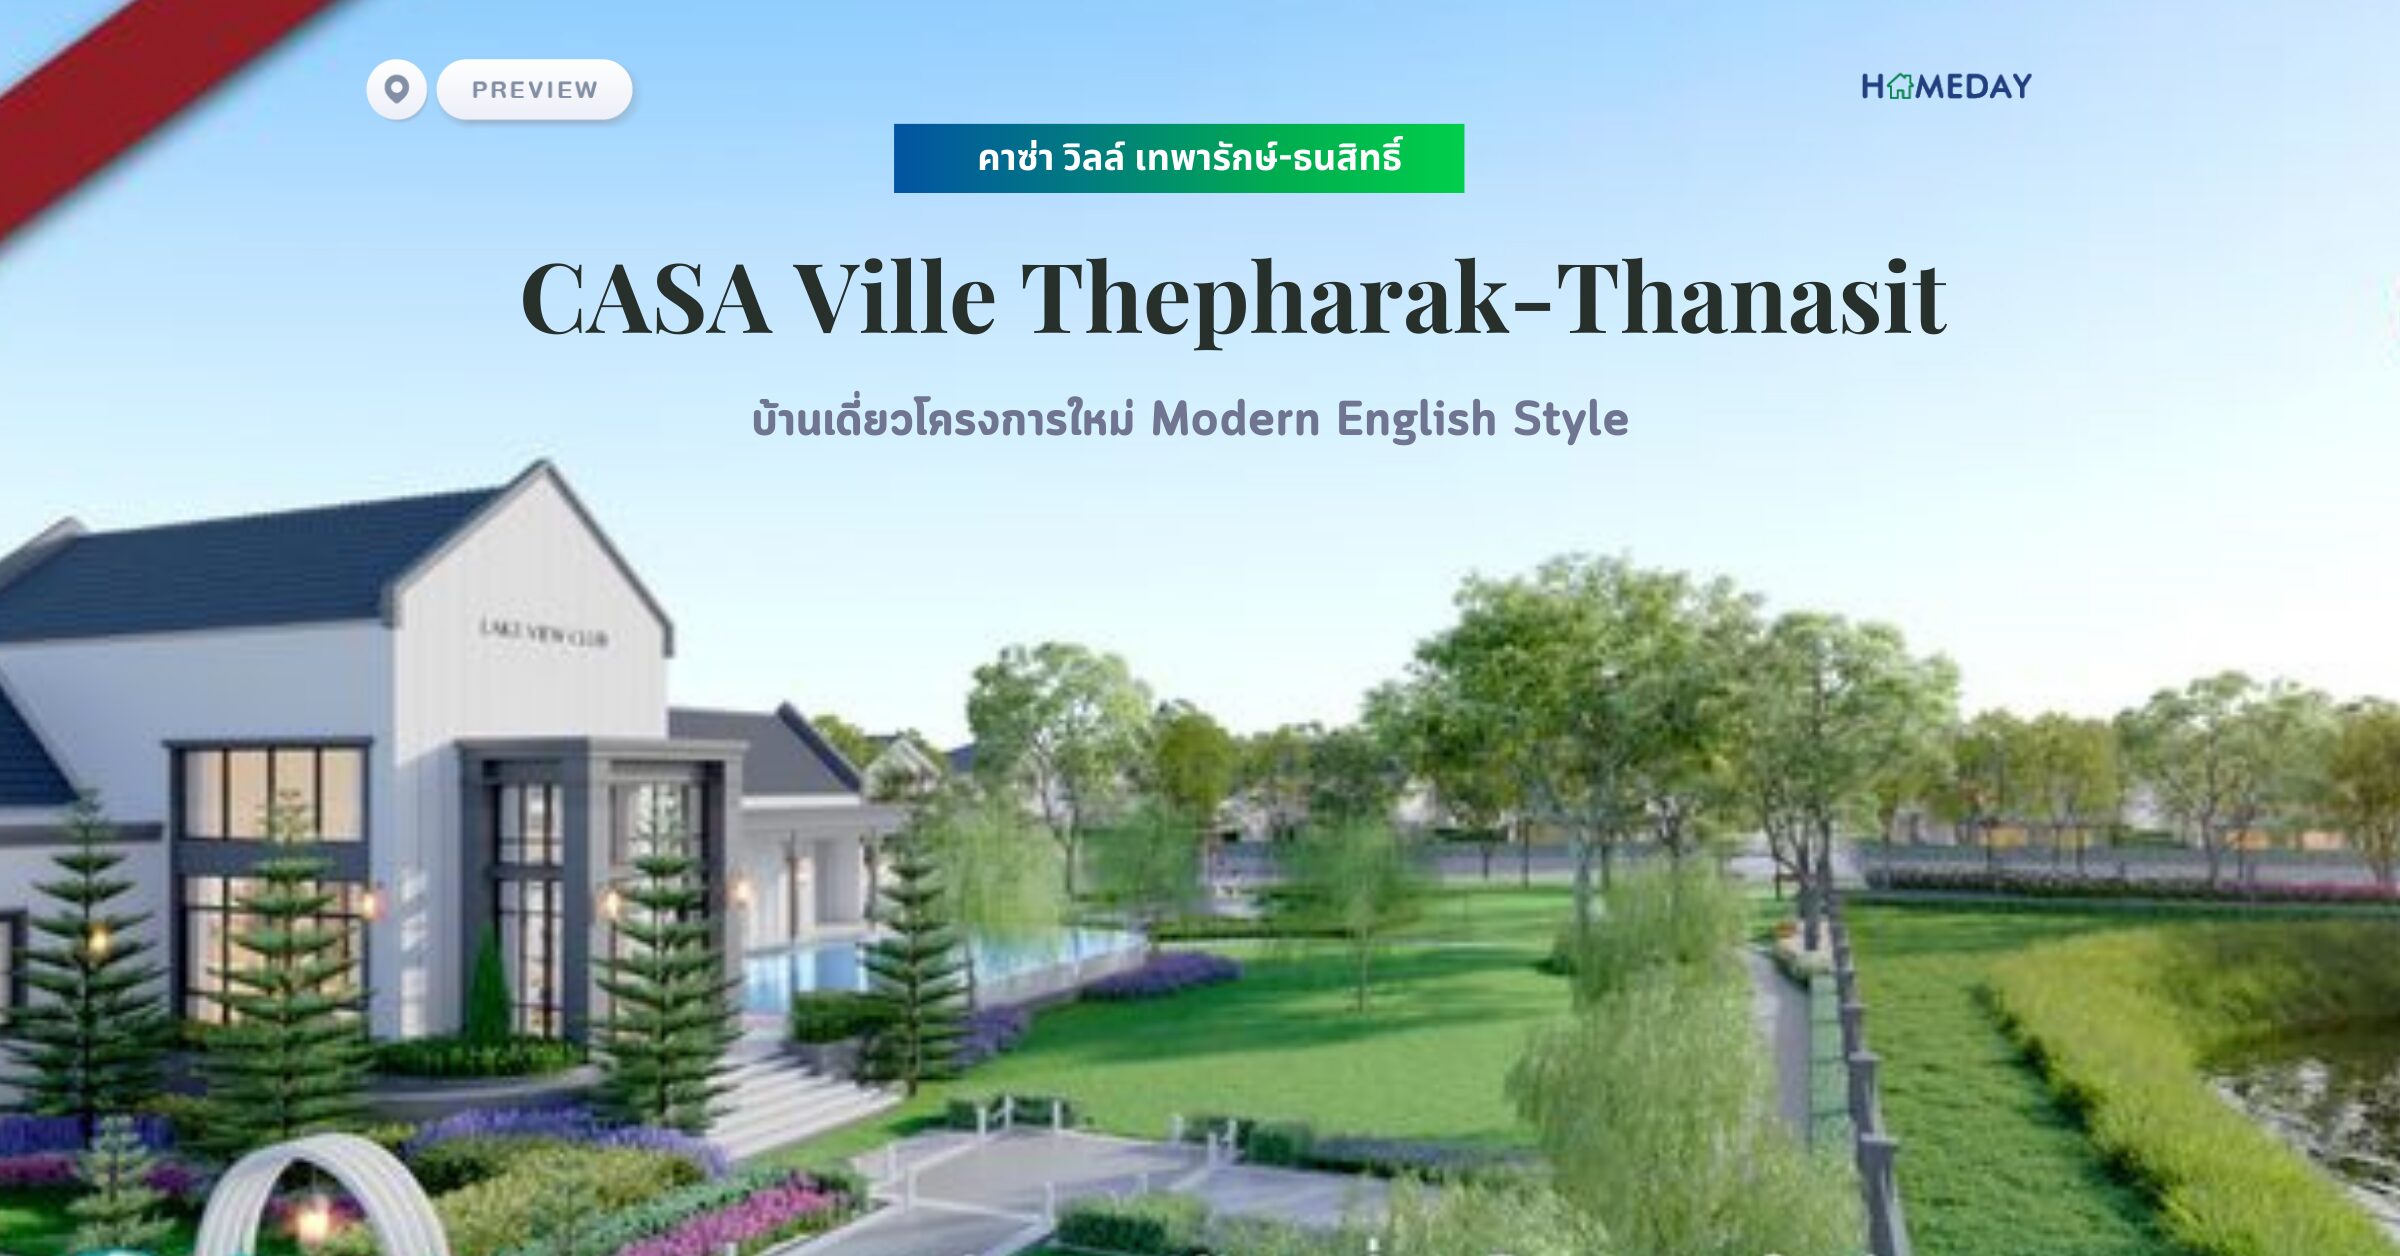 พรีวิว คาซ่า วิลล์ เทพารักษ์ ธนสิทธิ์ (casa Ville Thepharak Thanasit)บ้านเดี่ยวโครงการใหม่ Modern English Style